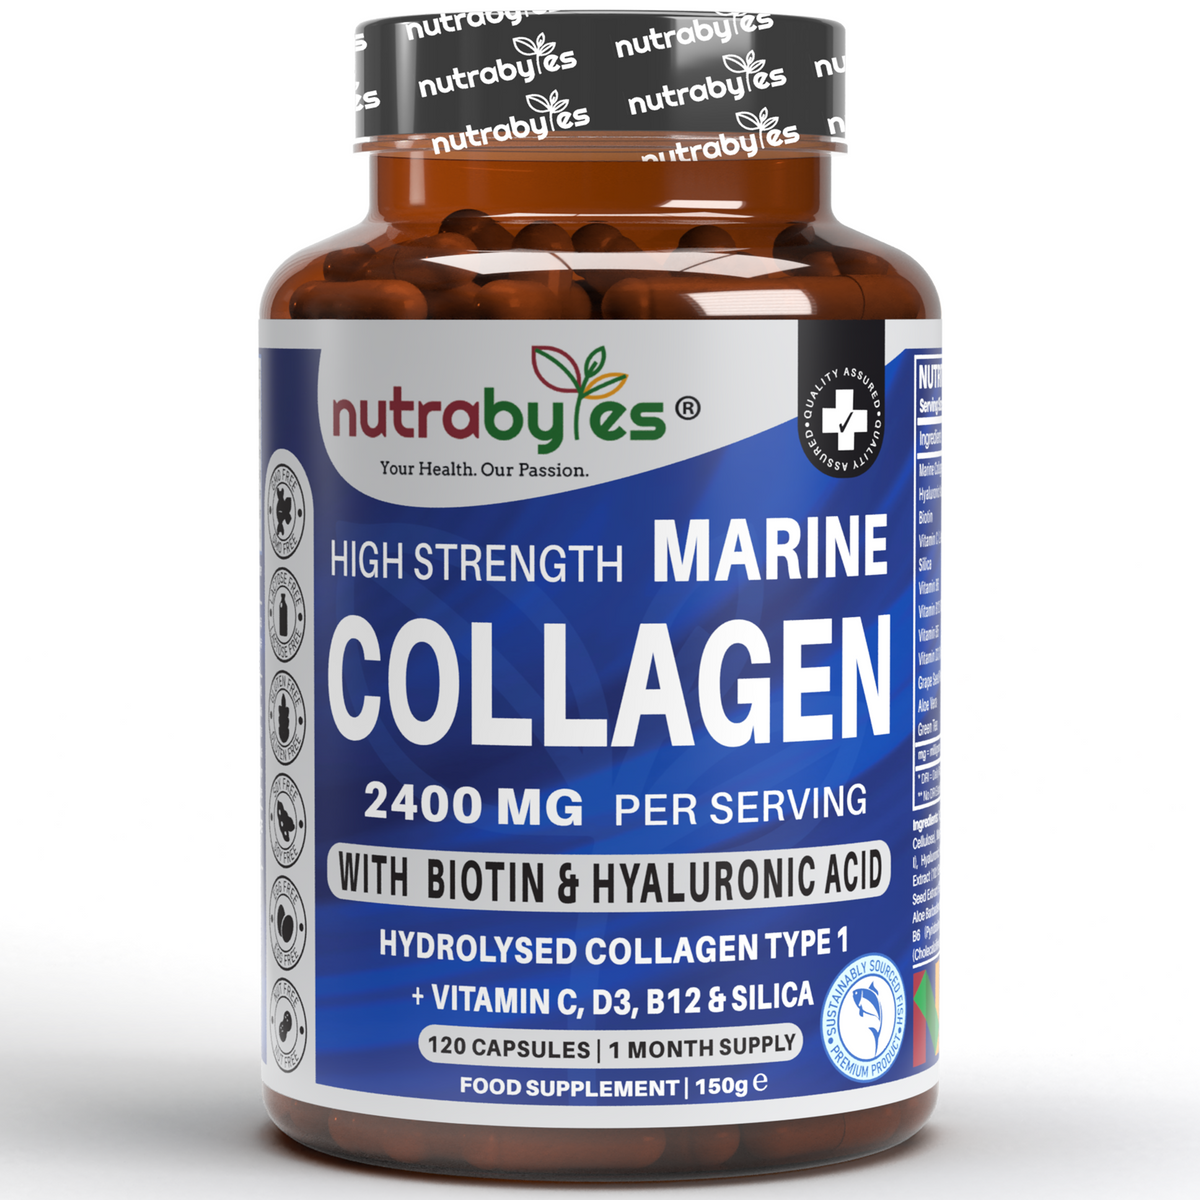 Meereskollagen-Komplex (Kapseln), 2400 mg hydrolysiertes Meereskollagen (Typ 1), Hyaluronsäure, Biotin, Kieselerde, Vitamin C, D3, B6 und B12 | Vereinigtes Königreich